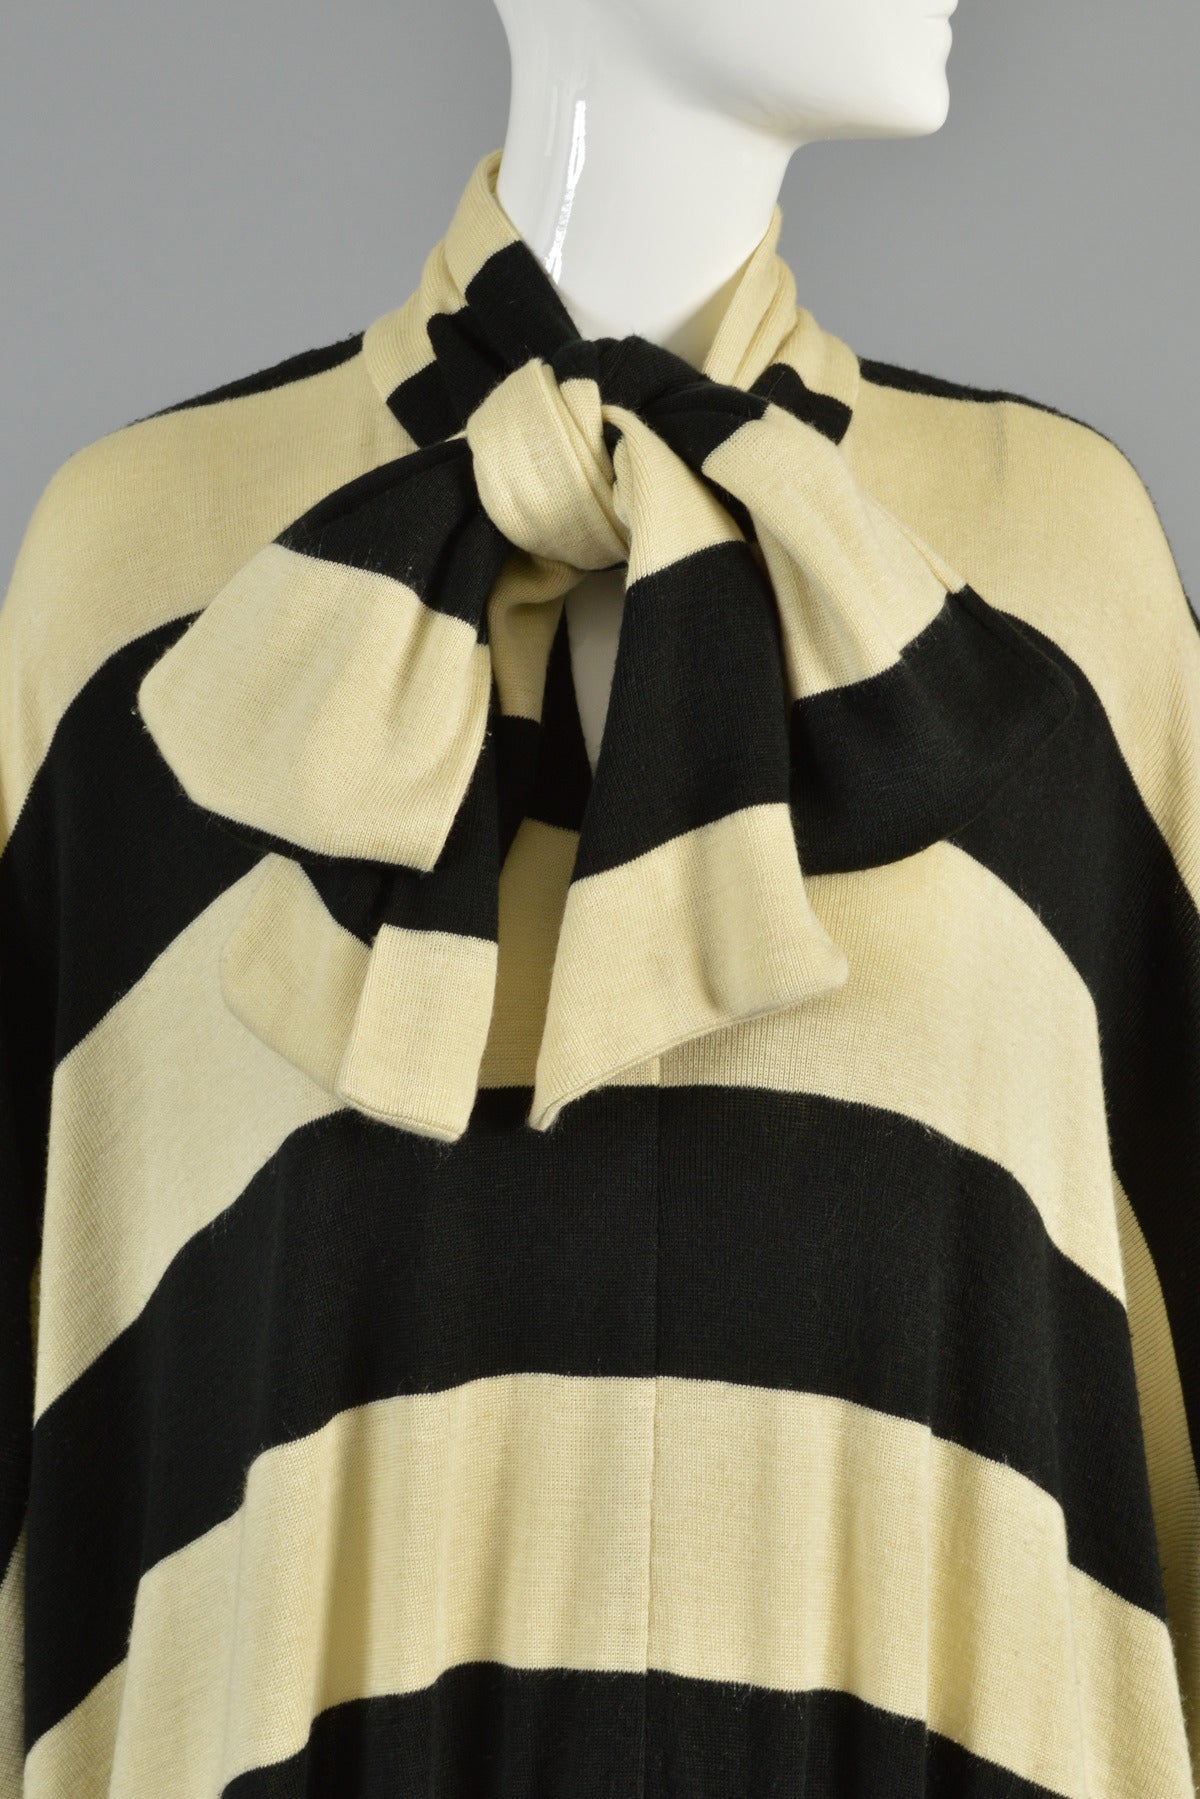 Early Norma Kamali Striped Knit Dress 1